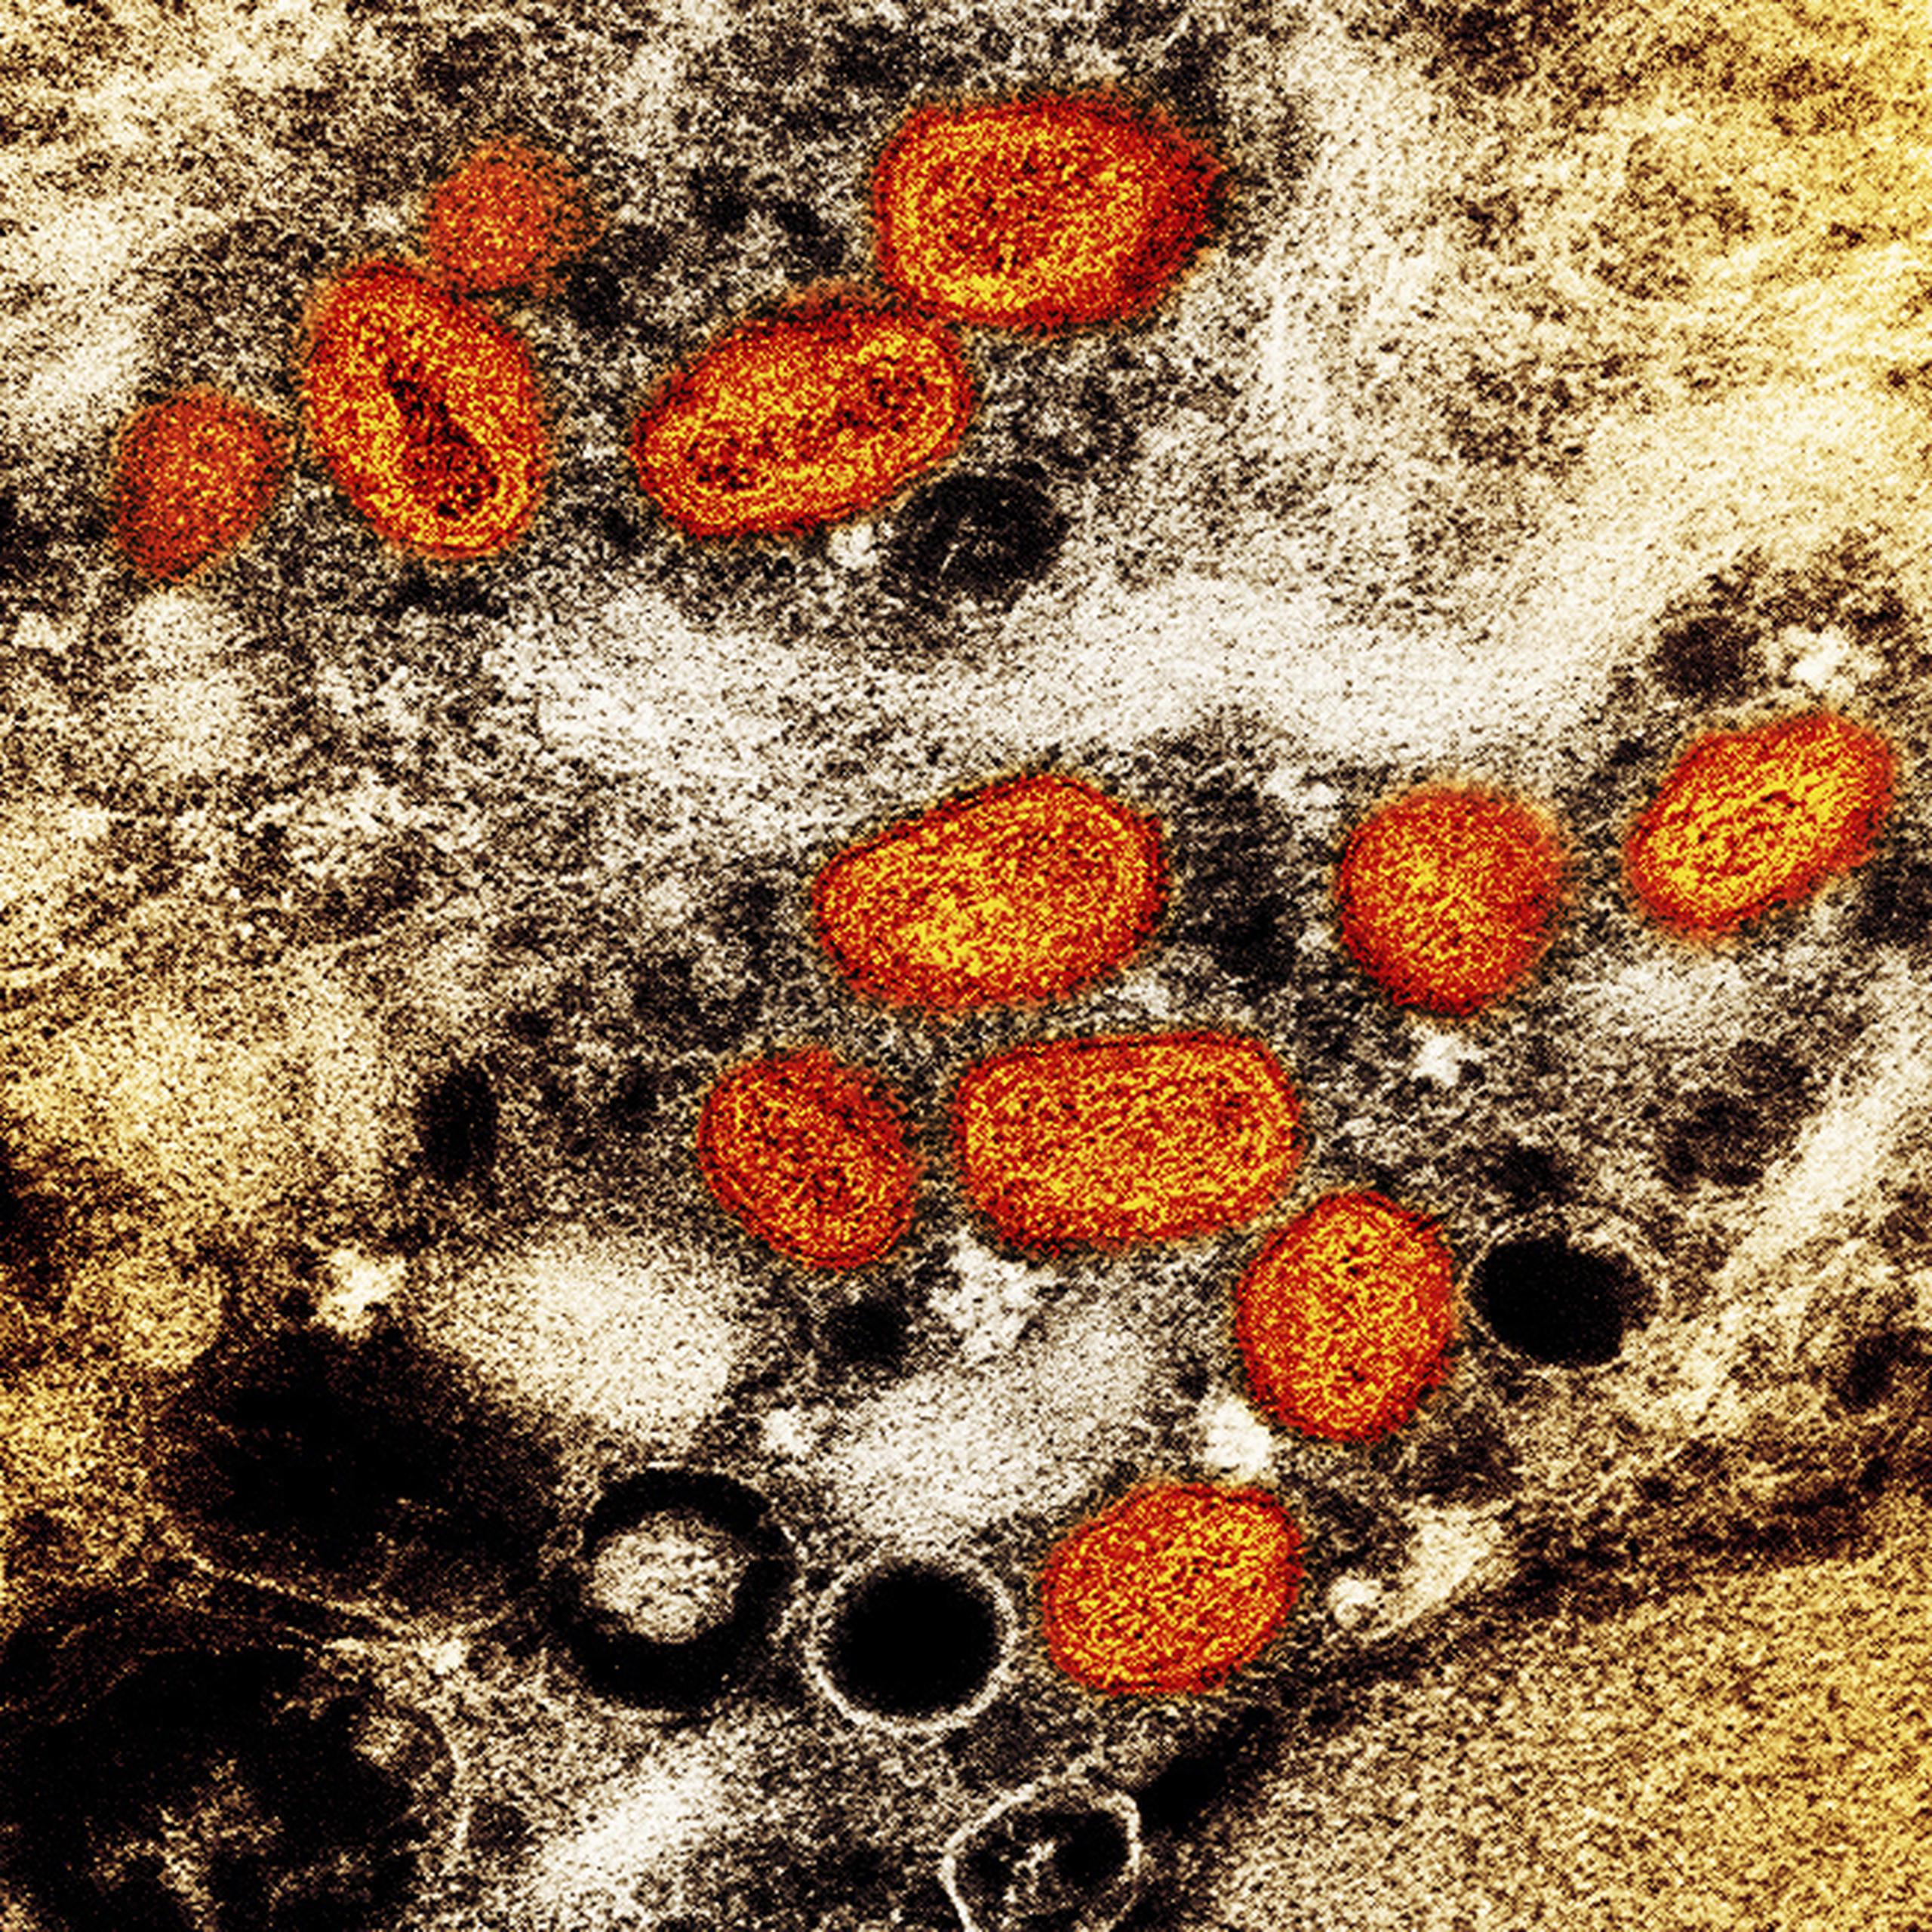 Esta imagen difundida por el Instituto Nacional de Alergias y Enfermedades Infecciosas de Estados Unidos muestra una imagen a color captada con un microscopio electrónico de barrido en el que se ven partículas de viruela símica, en anaranjado, encontradas dentro de una célula infectada cultivada en un laboratorio.